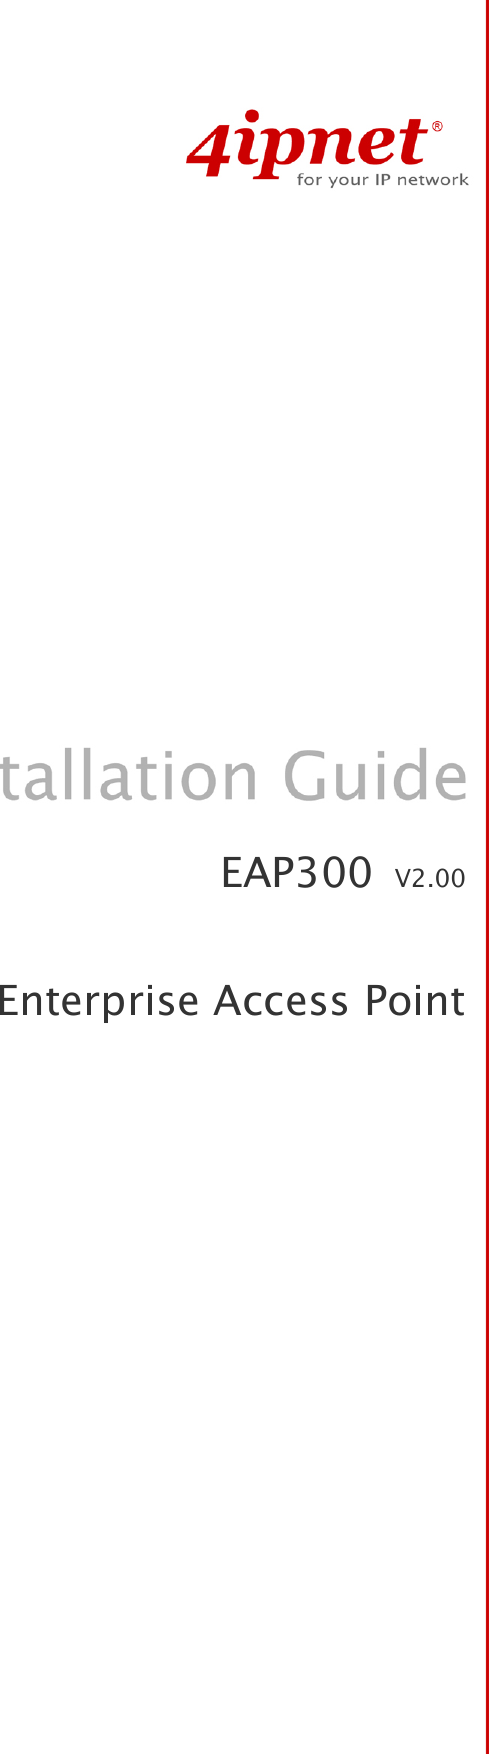   EAP300  V2.00  Enterprise Access Point 